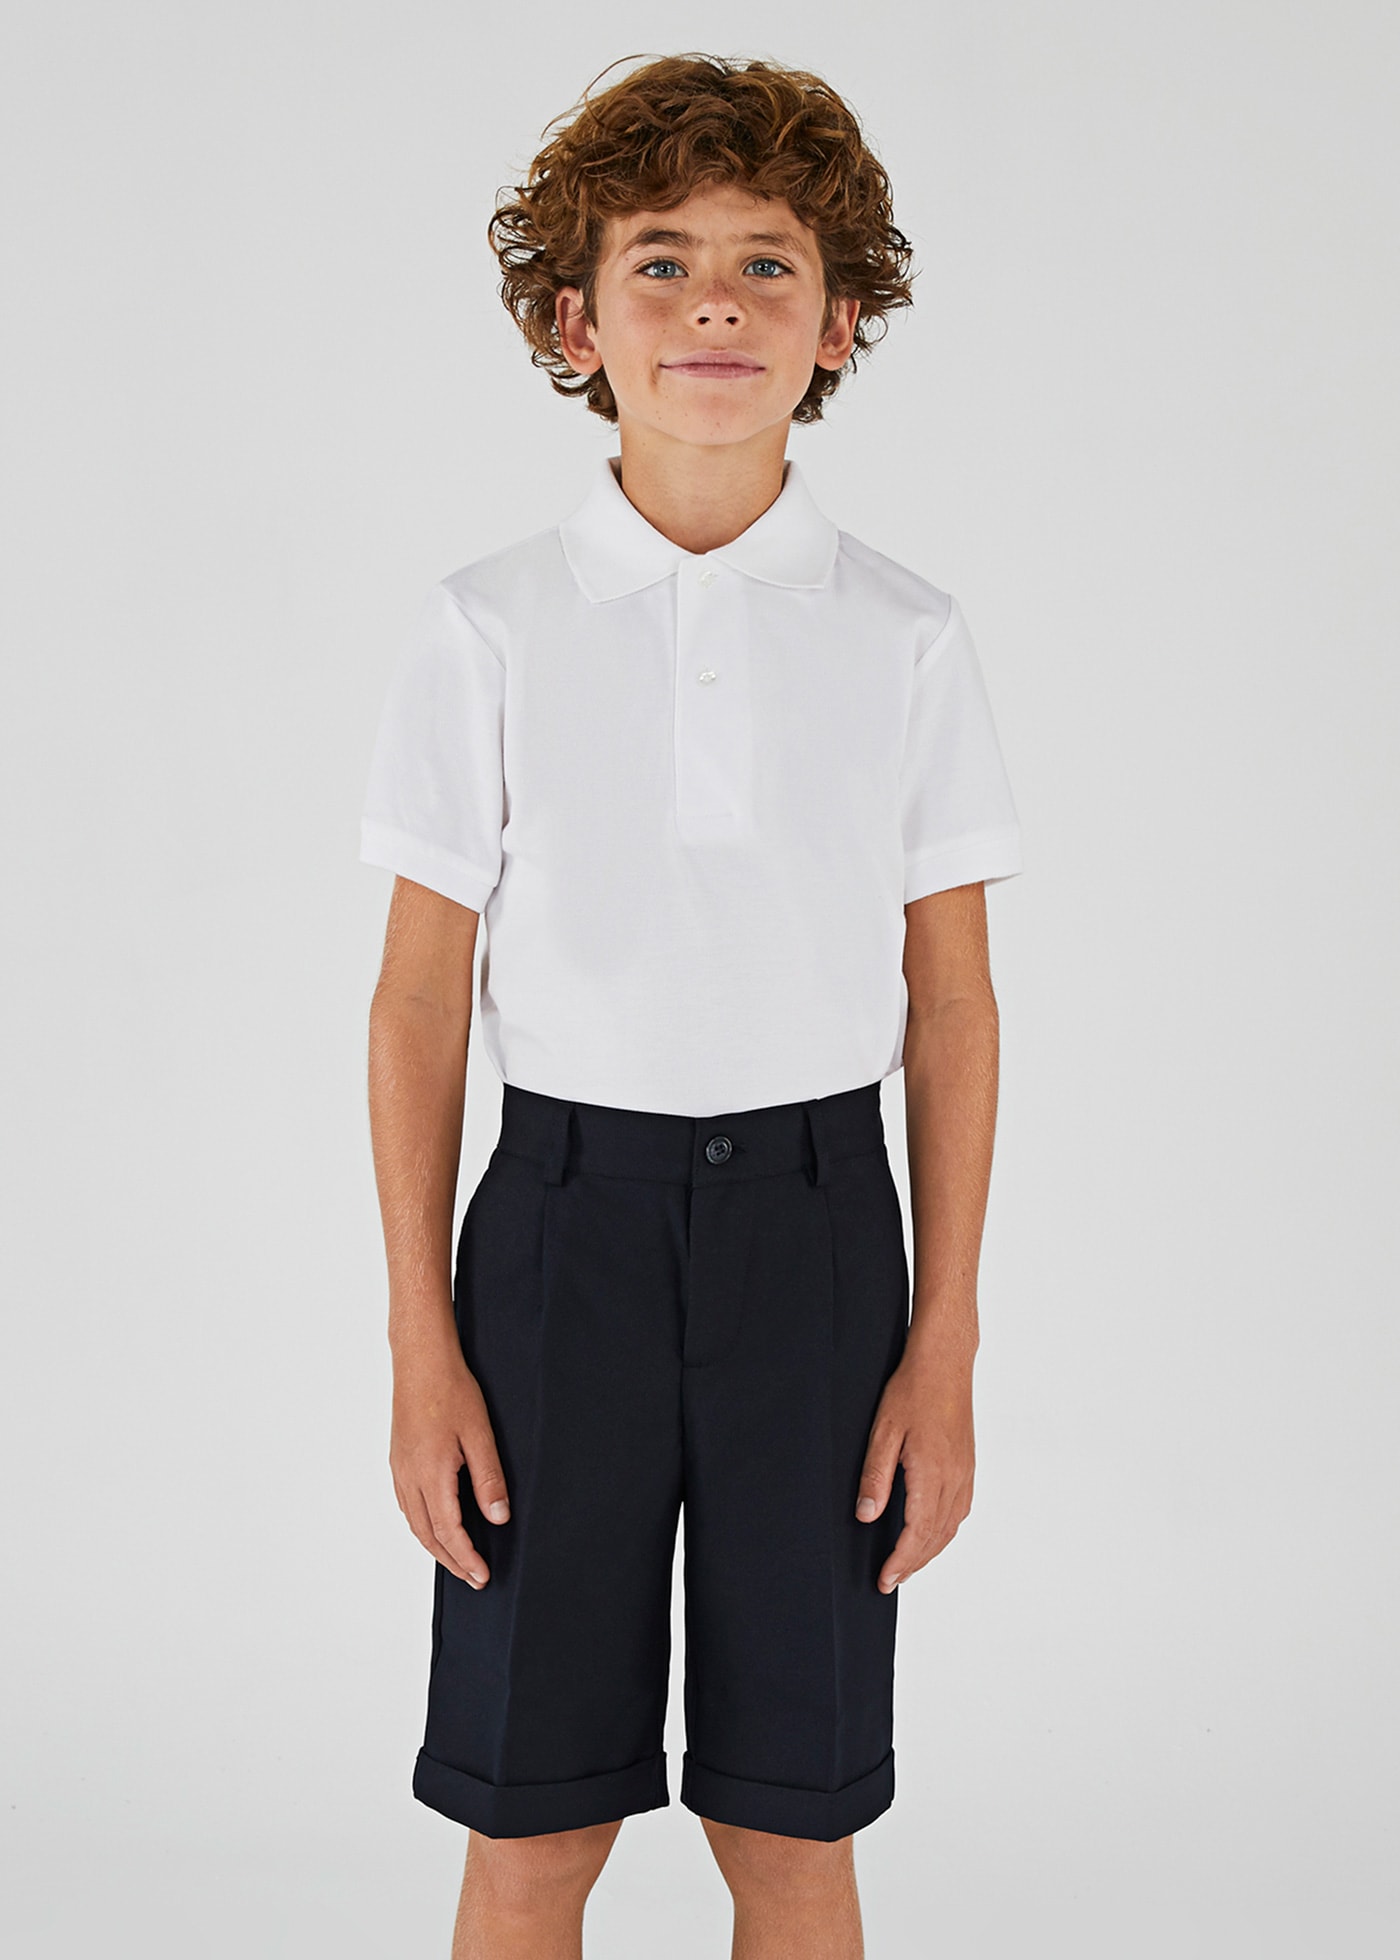 Pantalón corto uniforme chico